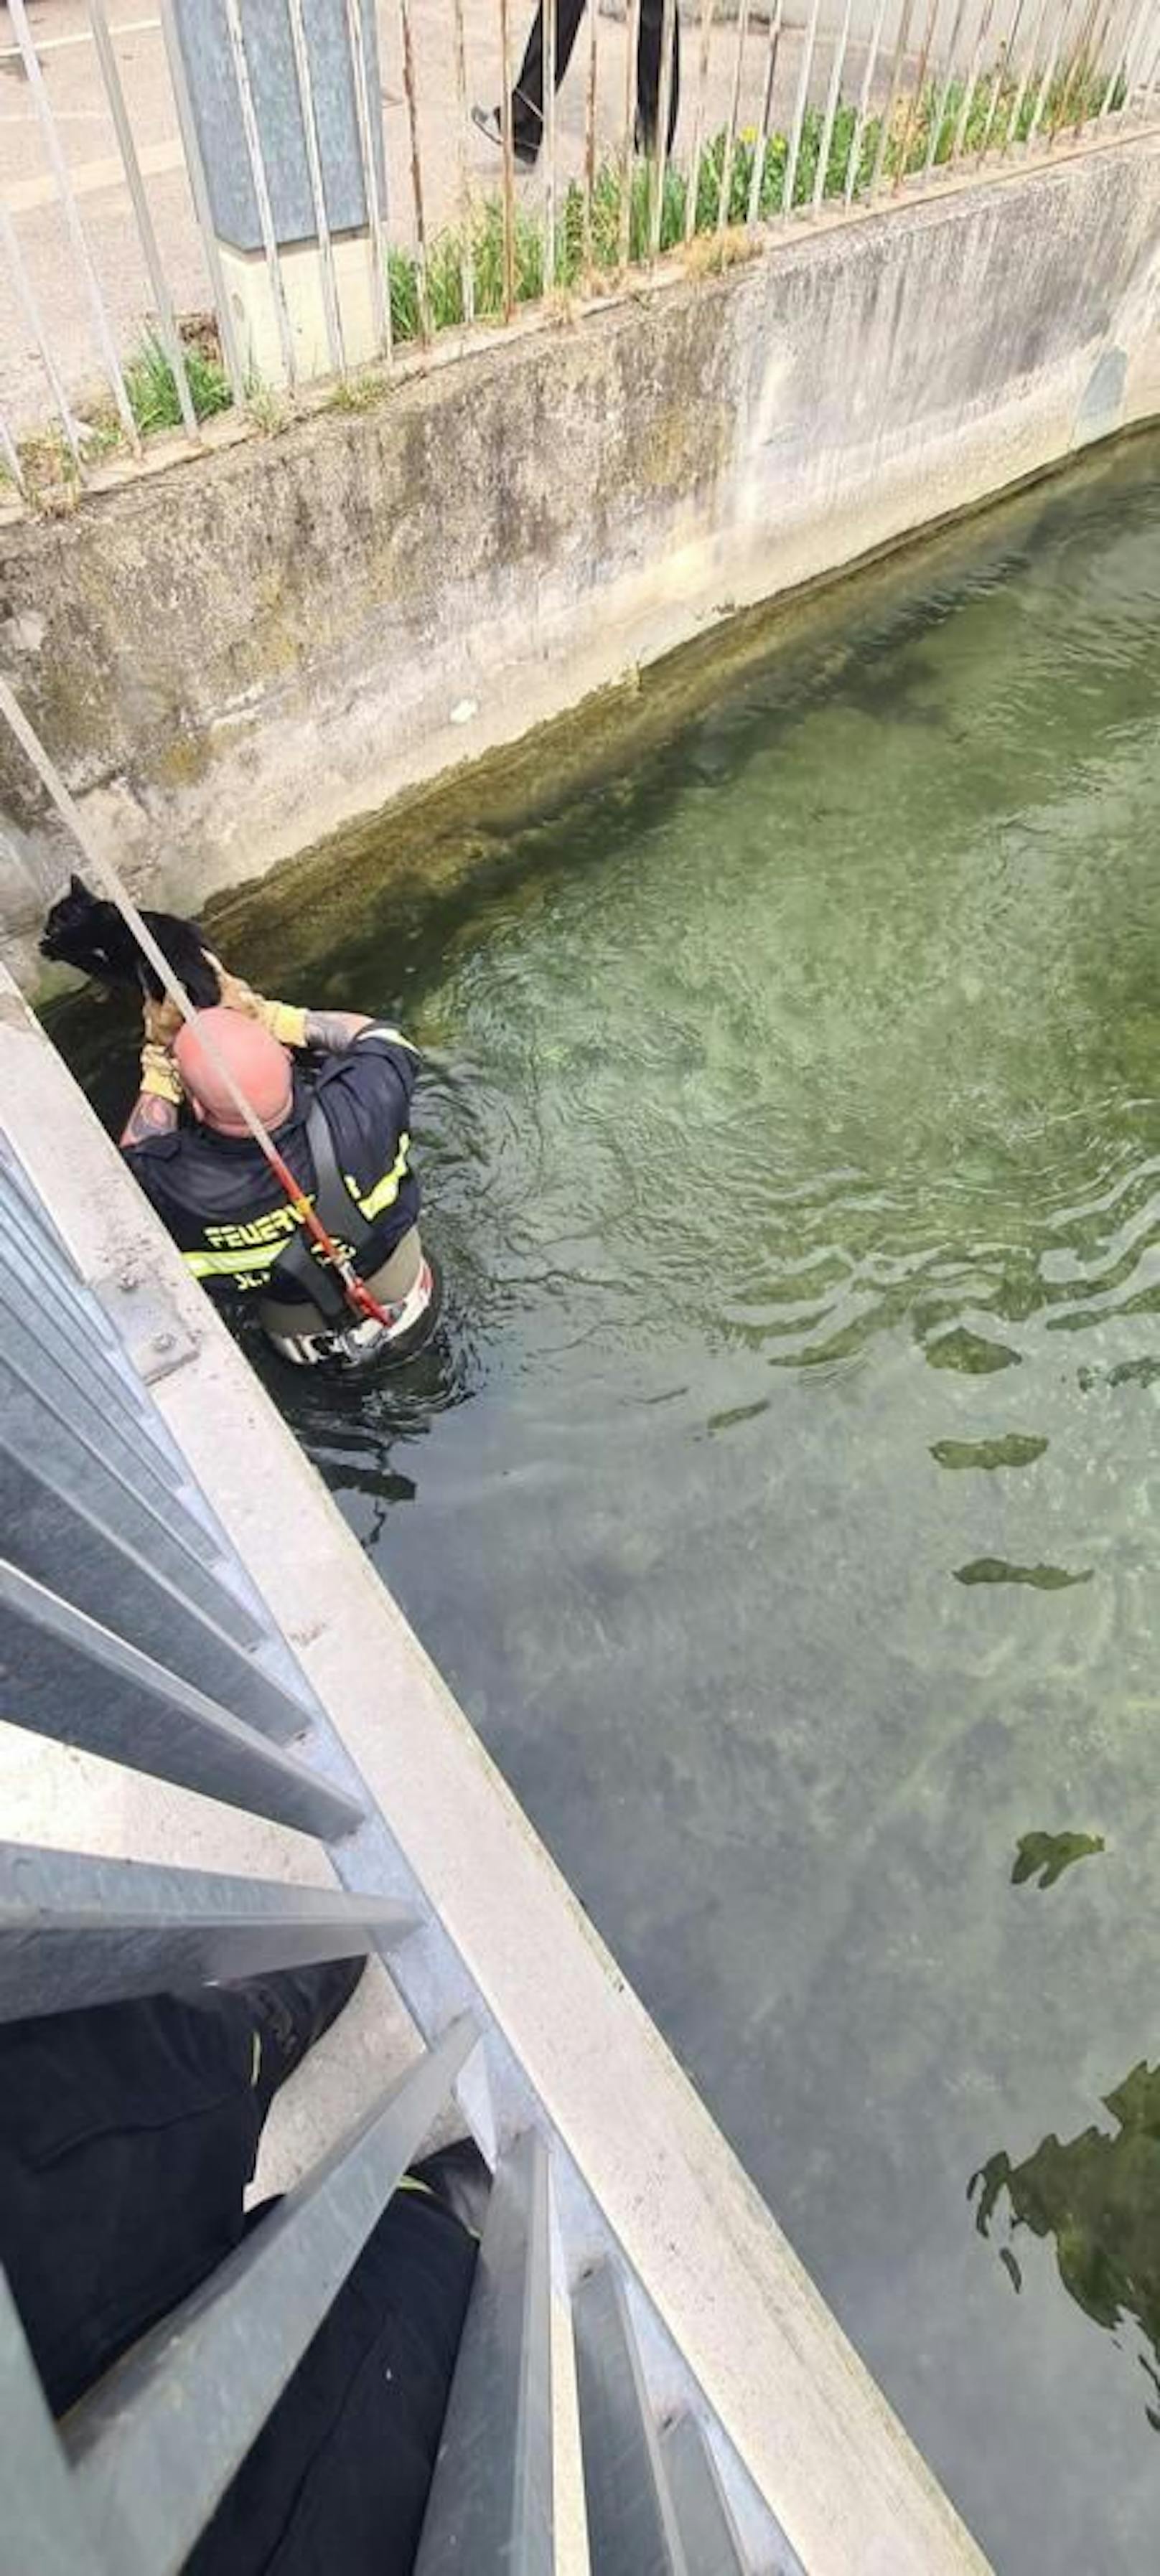 Feuerwehrmann stürzt sich in kalte Fluten